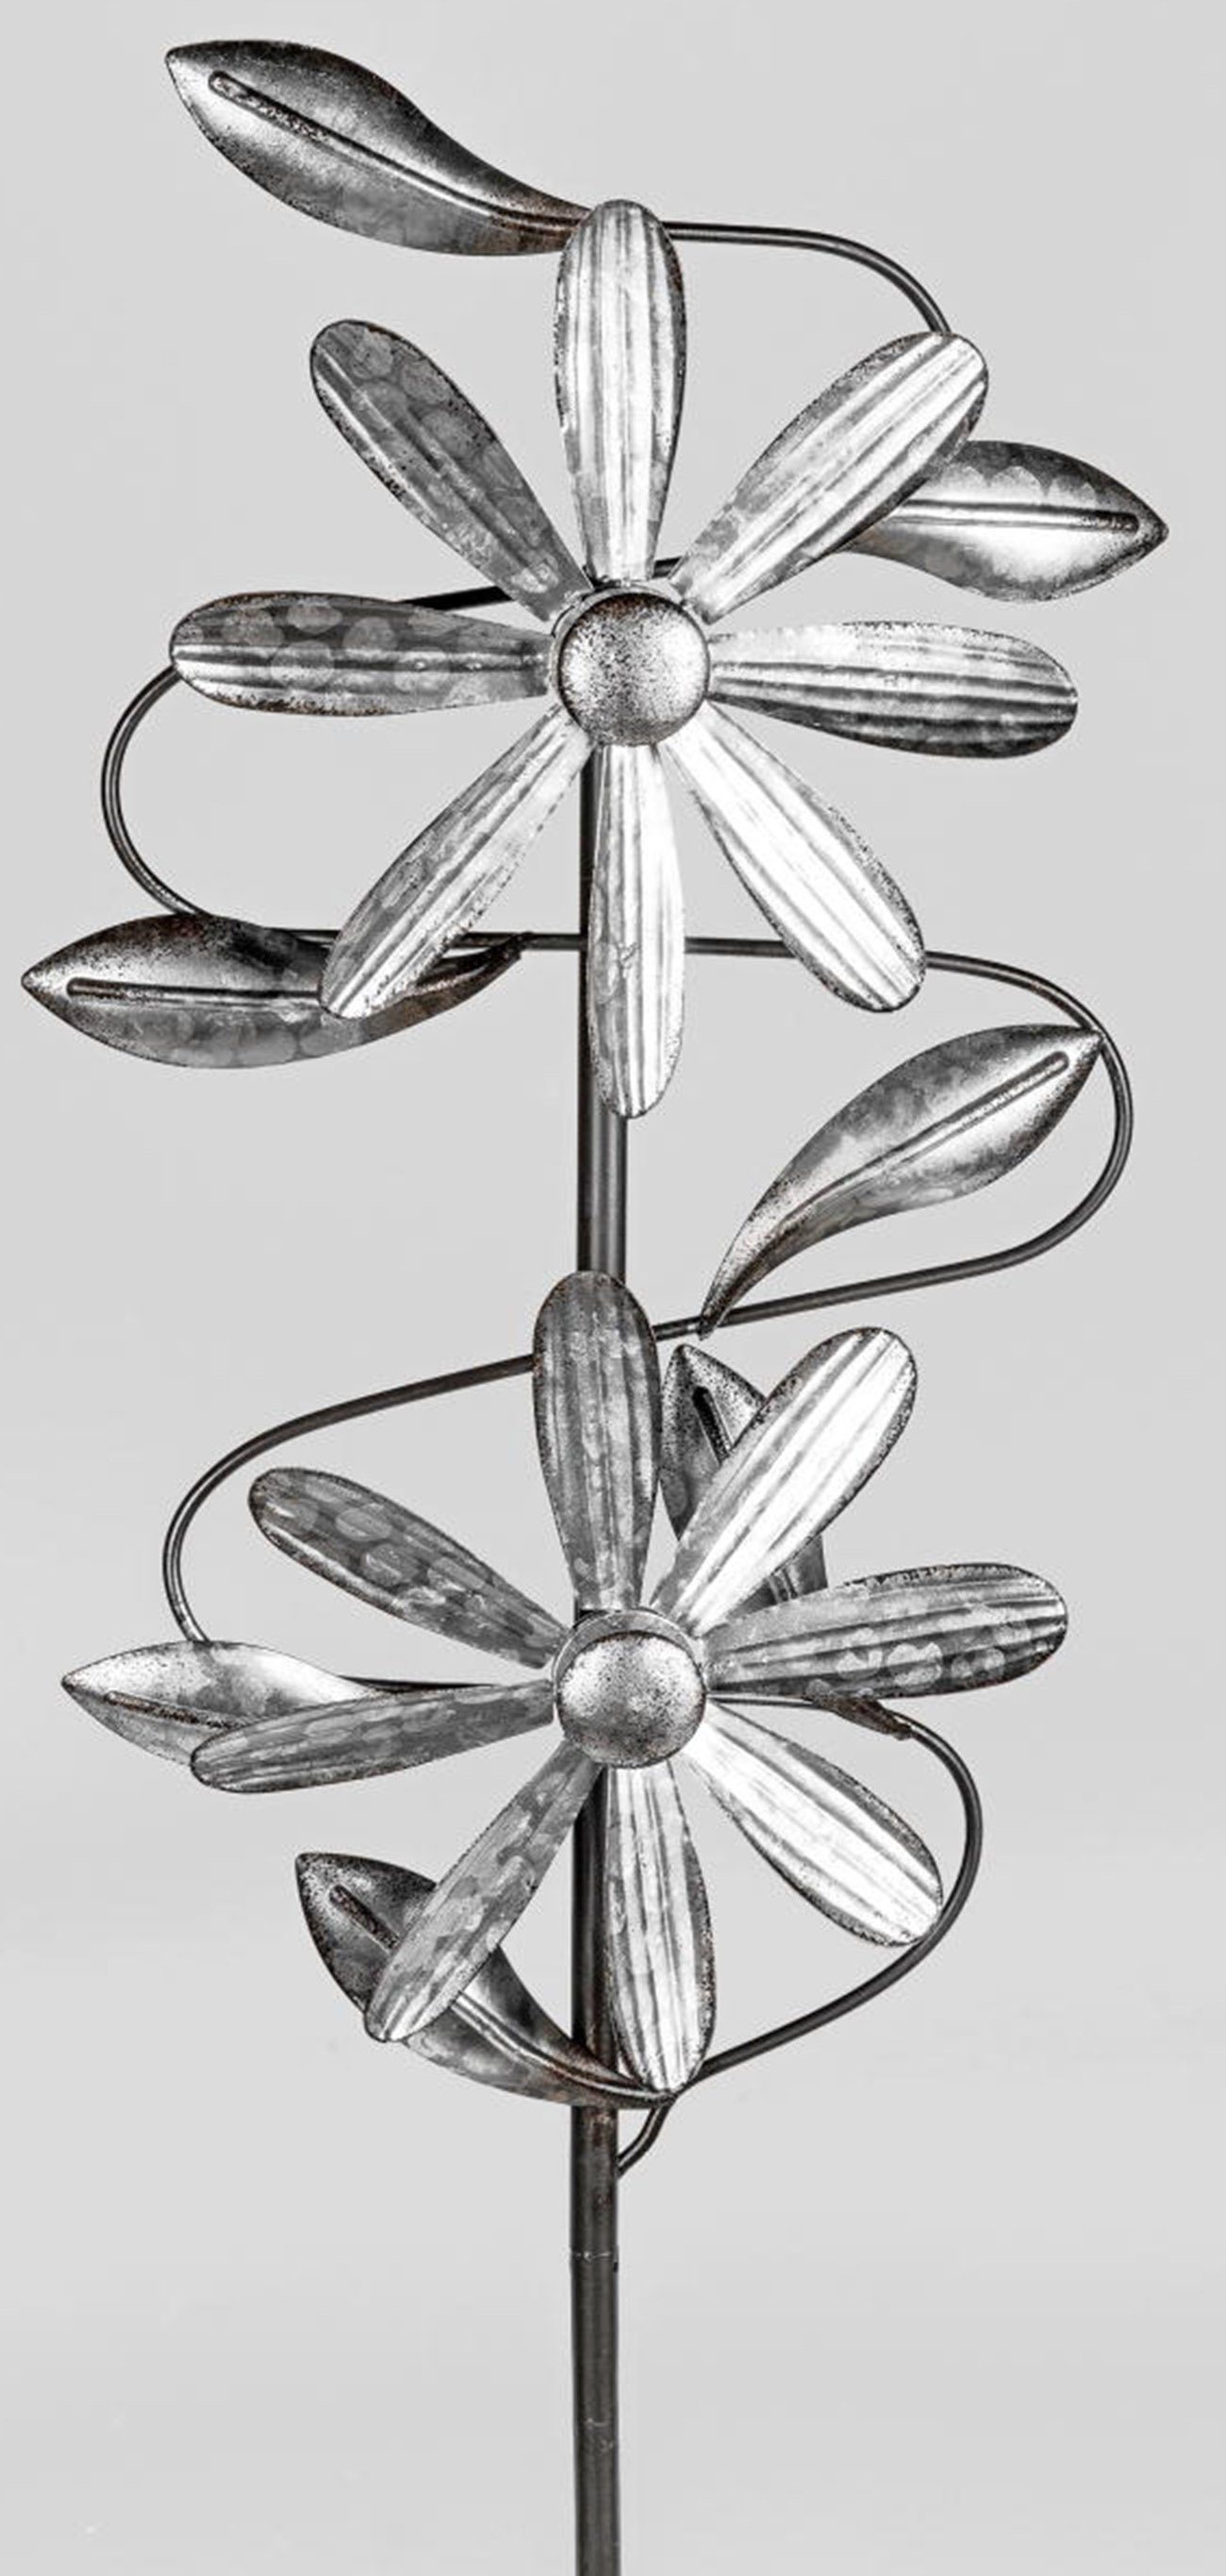 dekojohnson Deko-Windrad dekojohnson Blume aus cm 23/92 antik mit Stange Windrad silber Metall